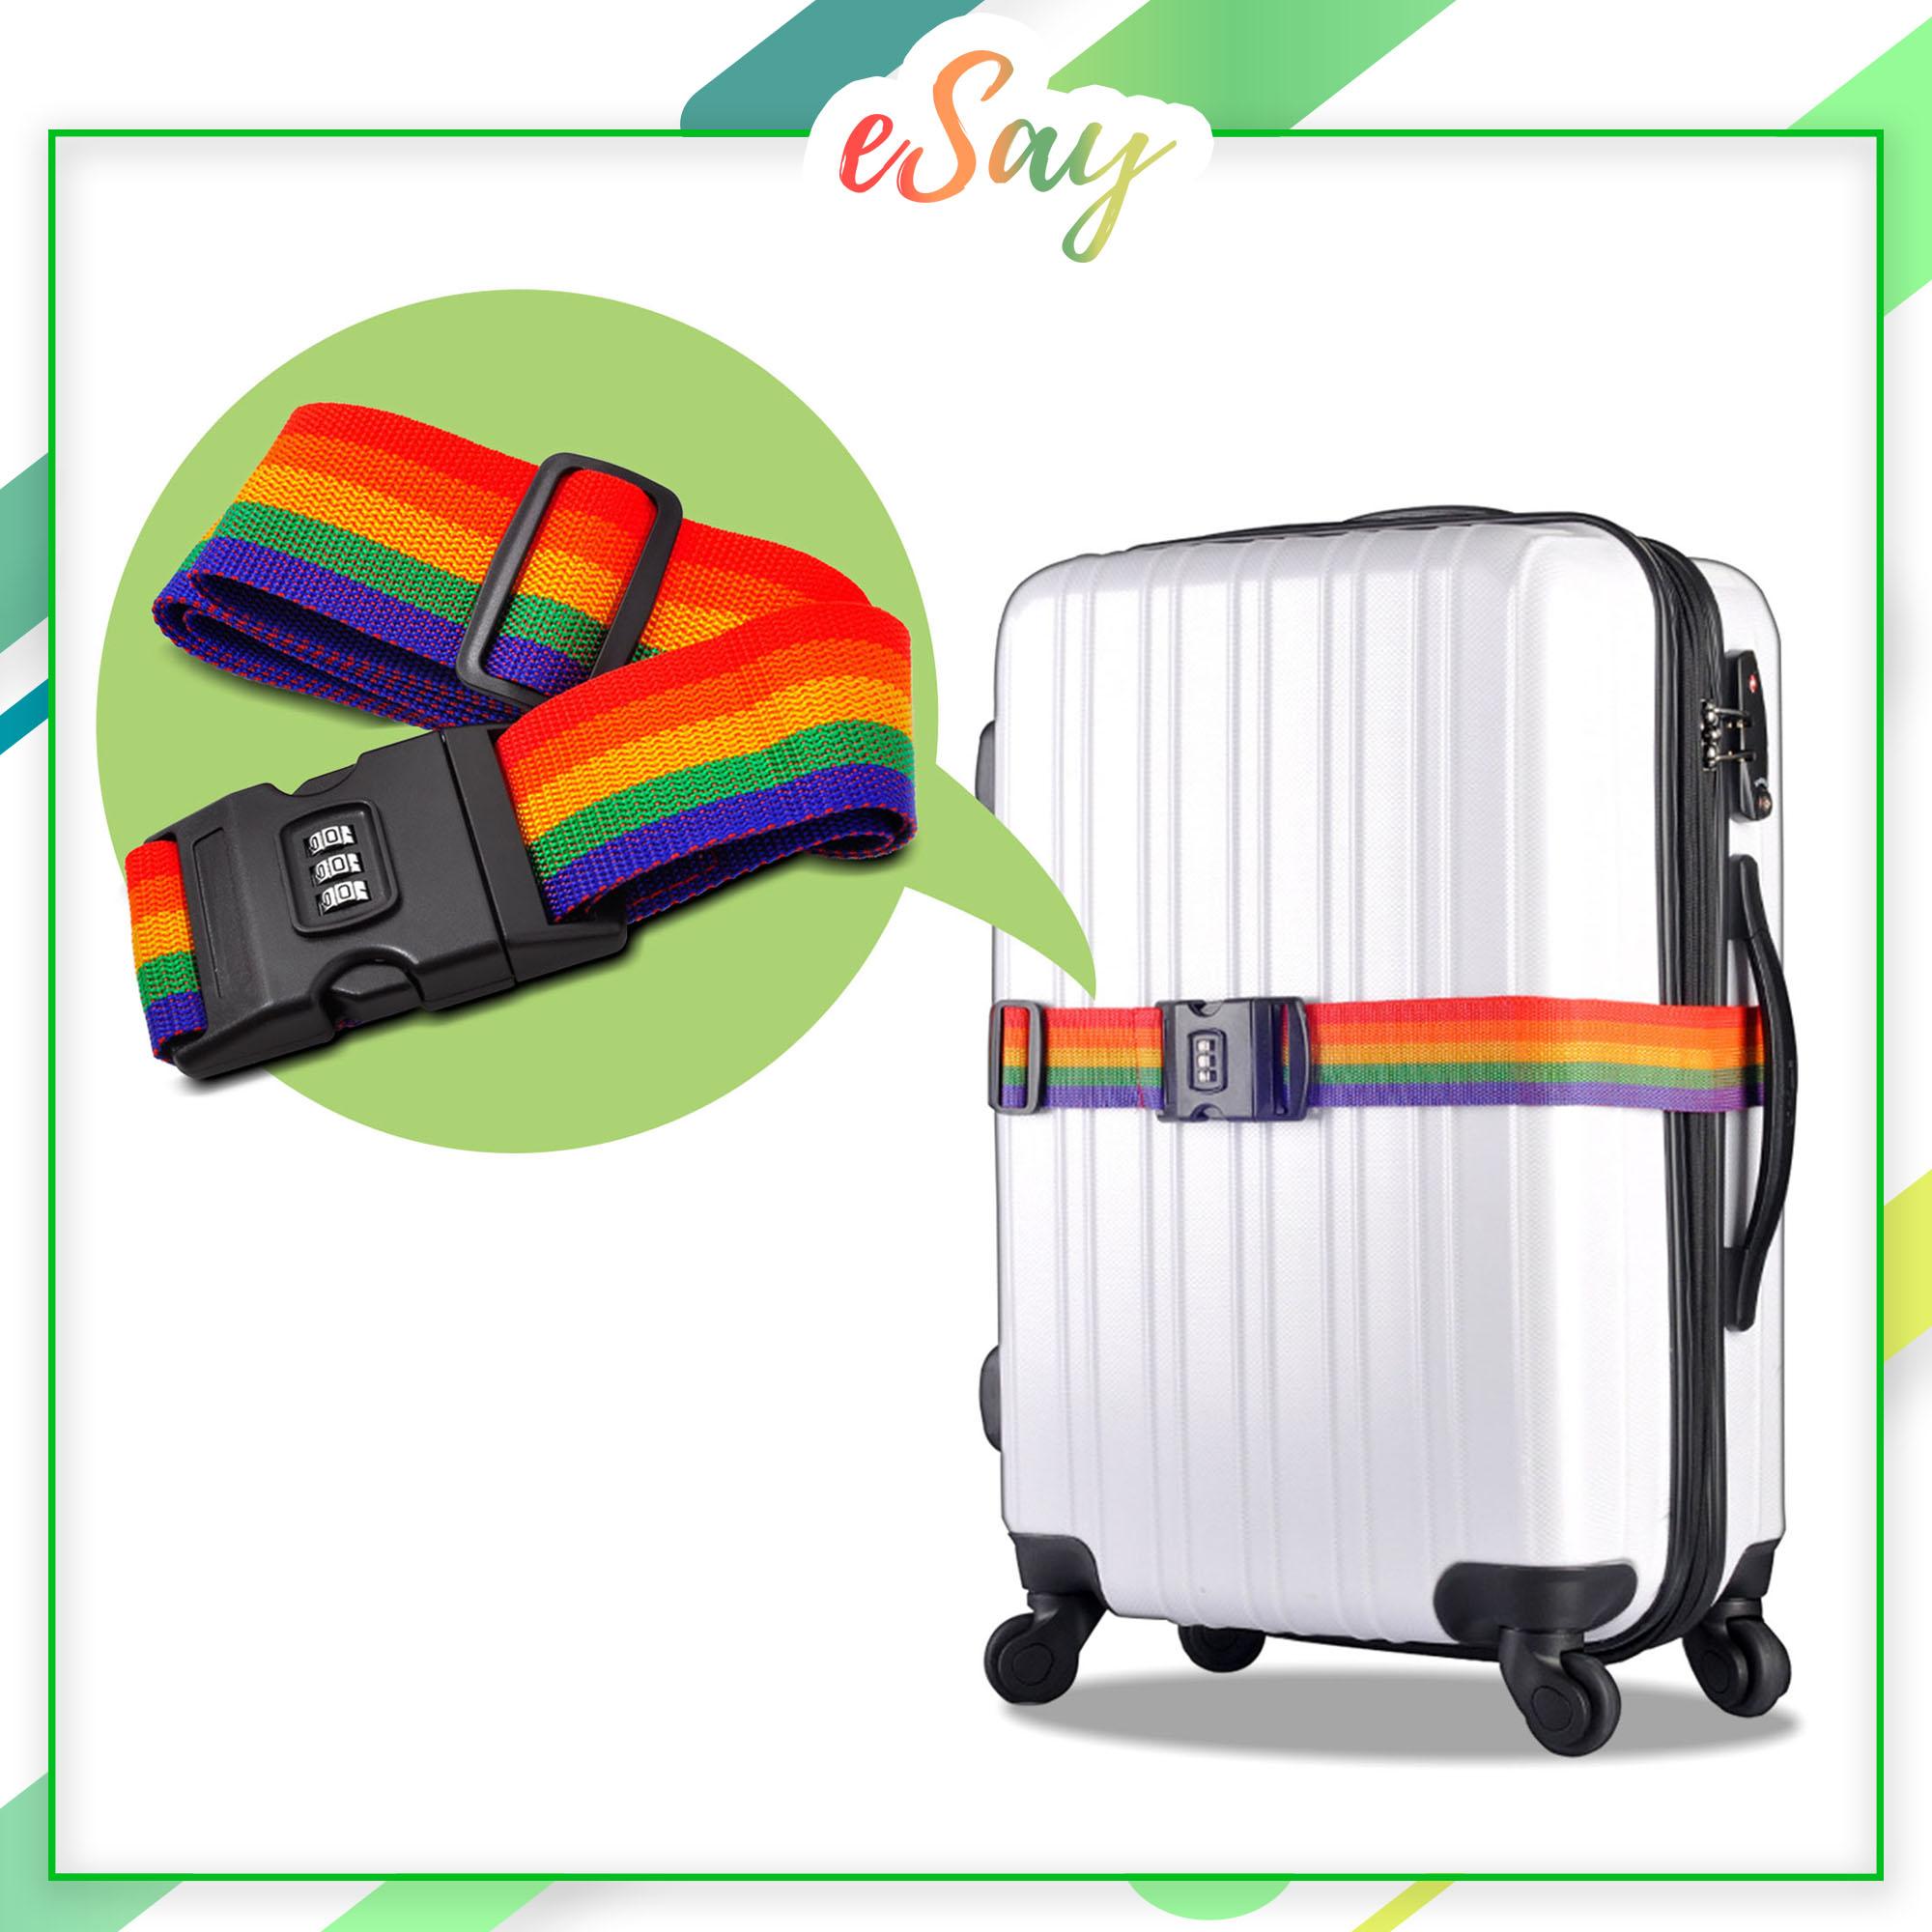 สายรัดกระเป๋าเดินทาง เข็มขัดรัดกระเป๋าเดินทาง มีรหัสล็อค ป้องกันกระเป๋าซิปแตกจากการกระแทกและป้องกันขโมย (พร้อมจัดส่ง)